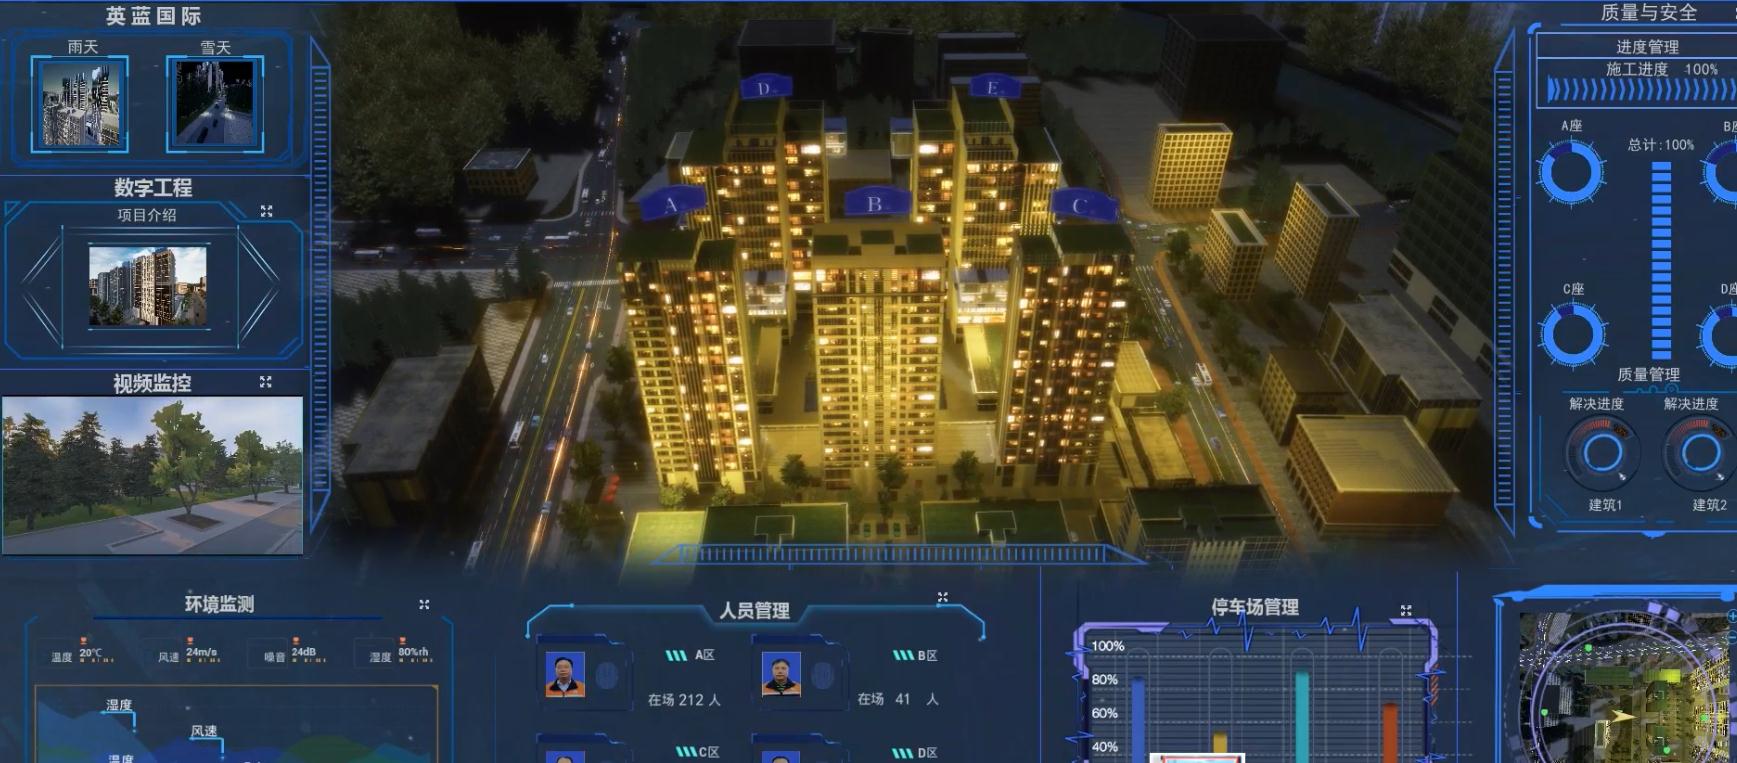 上海智慧城市制作公司